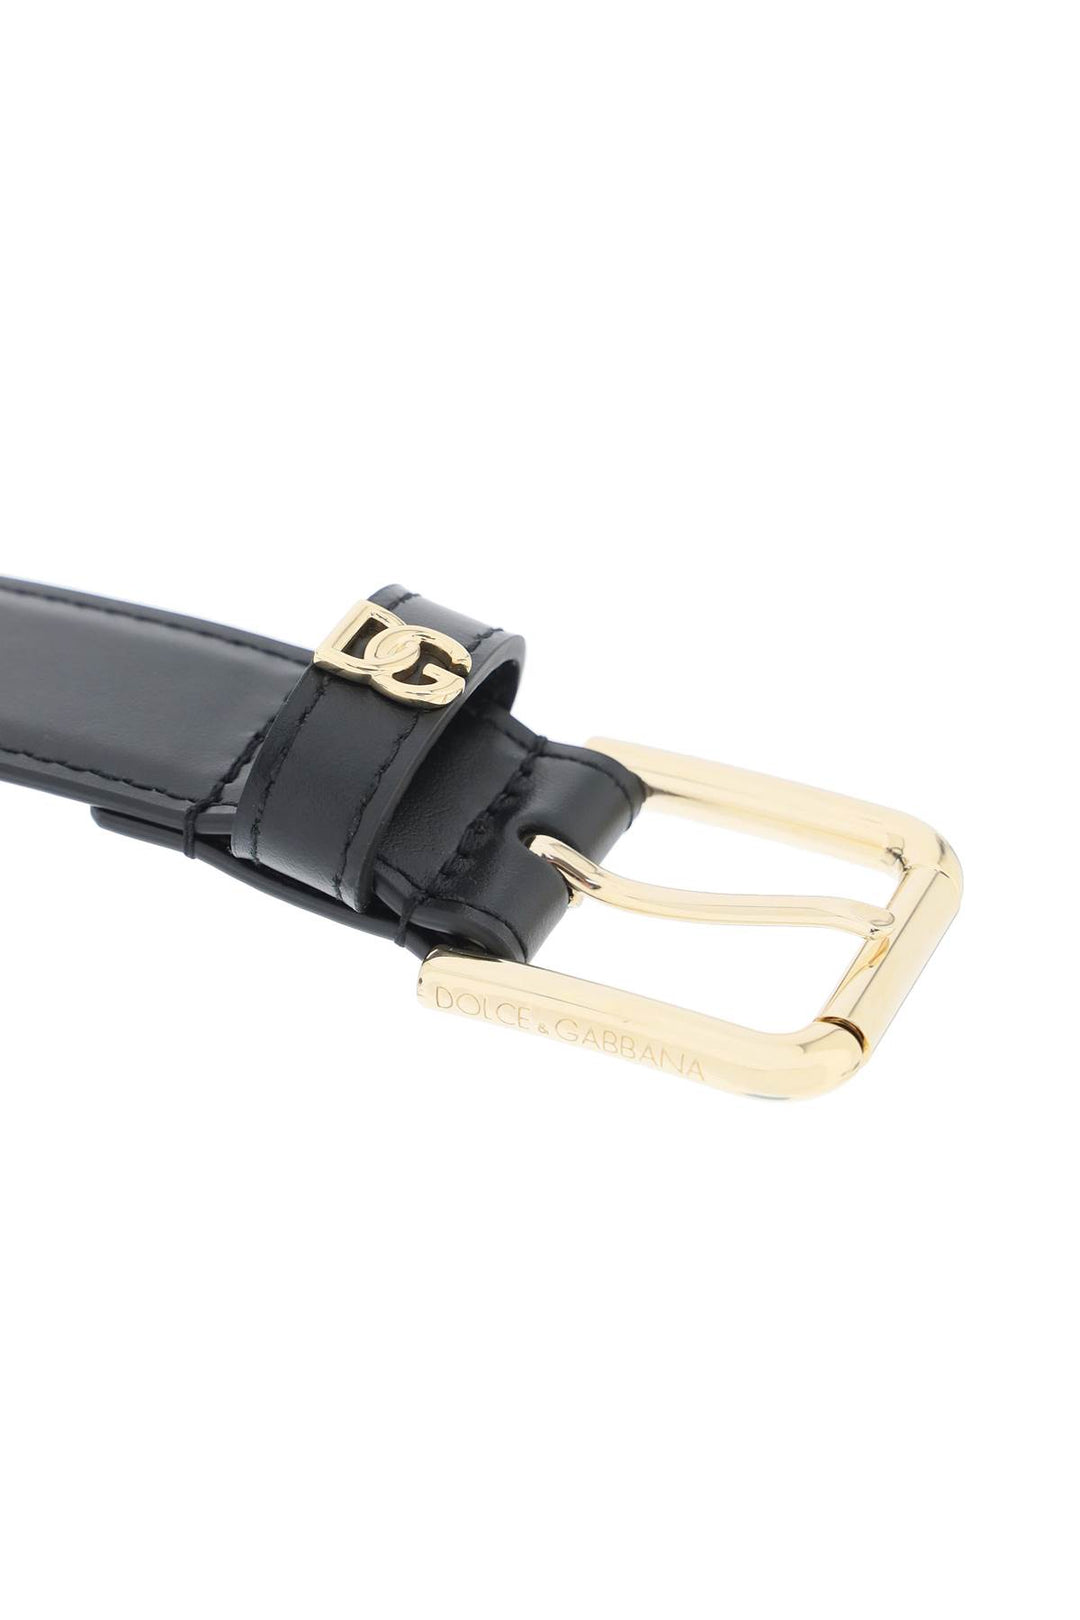 Cintura In Pelle Con Logo Dg - Dolce & Gabbana - Donna